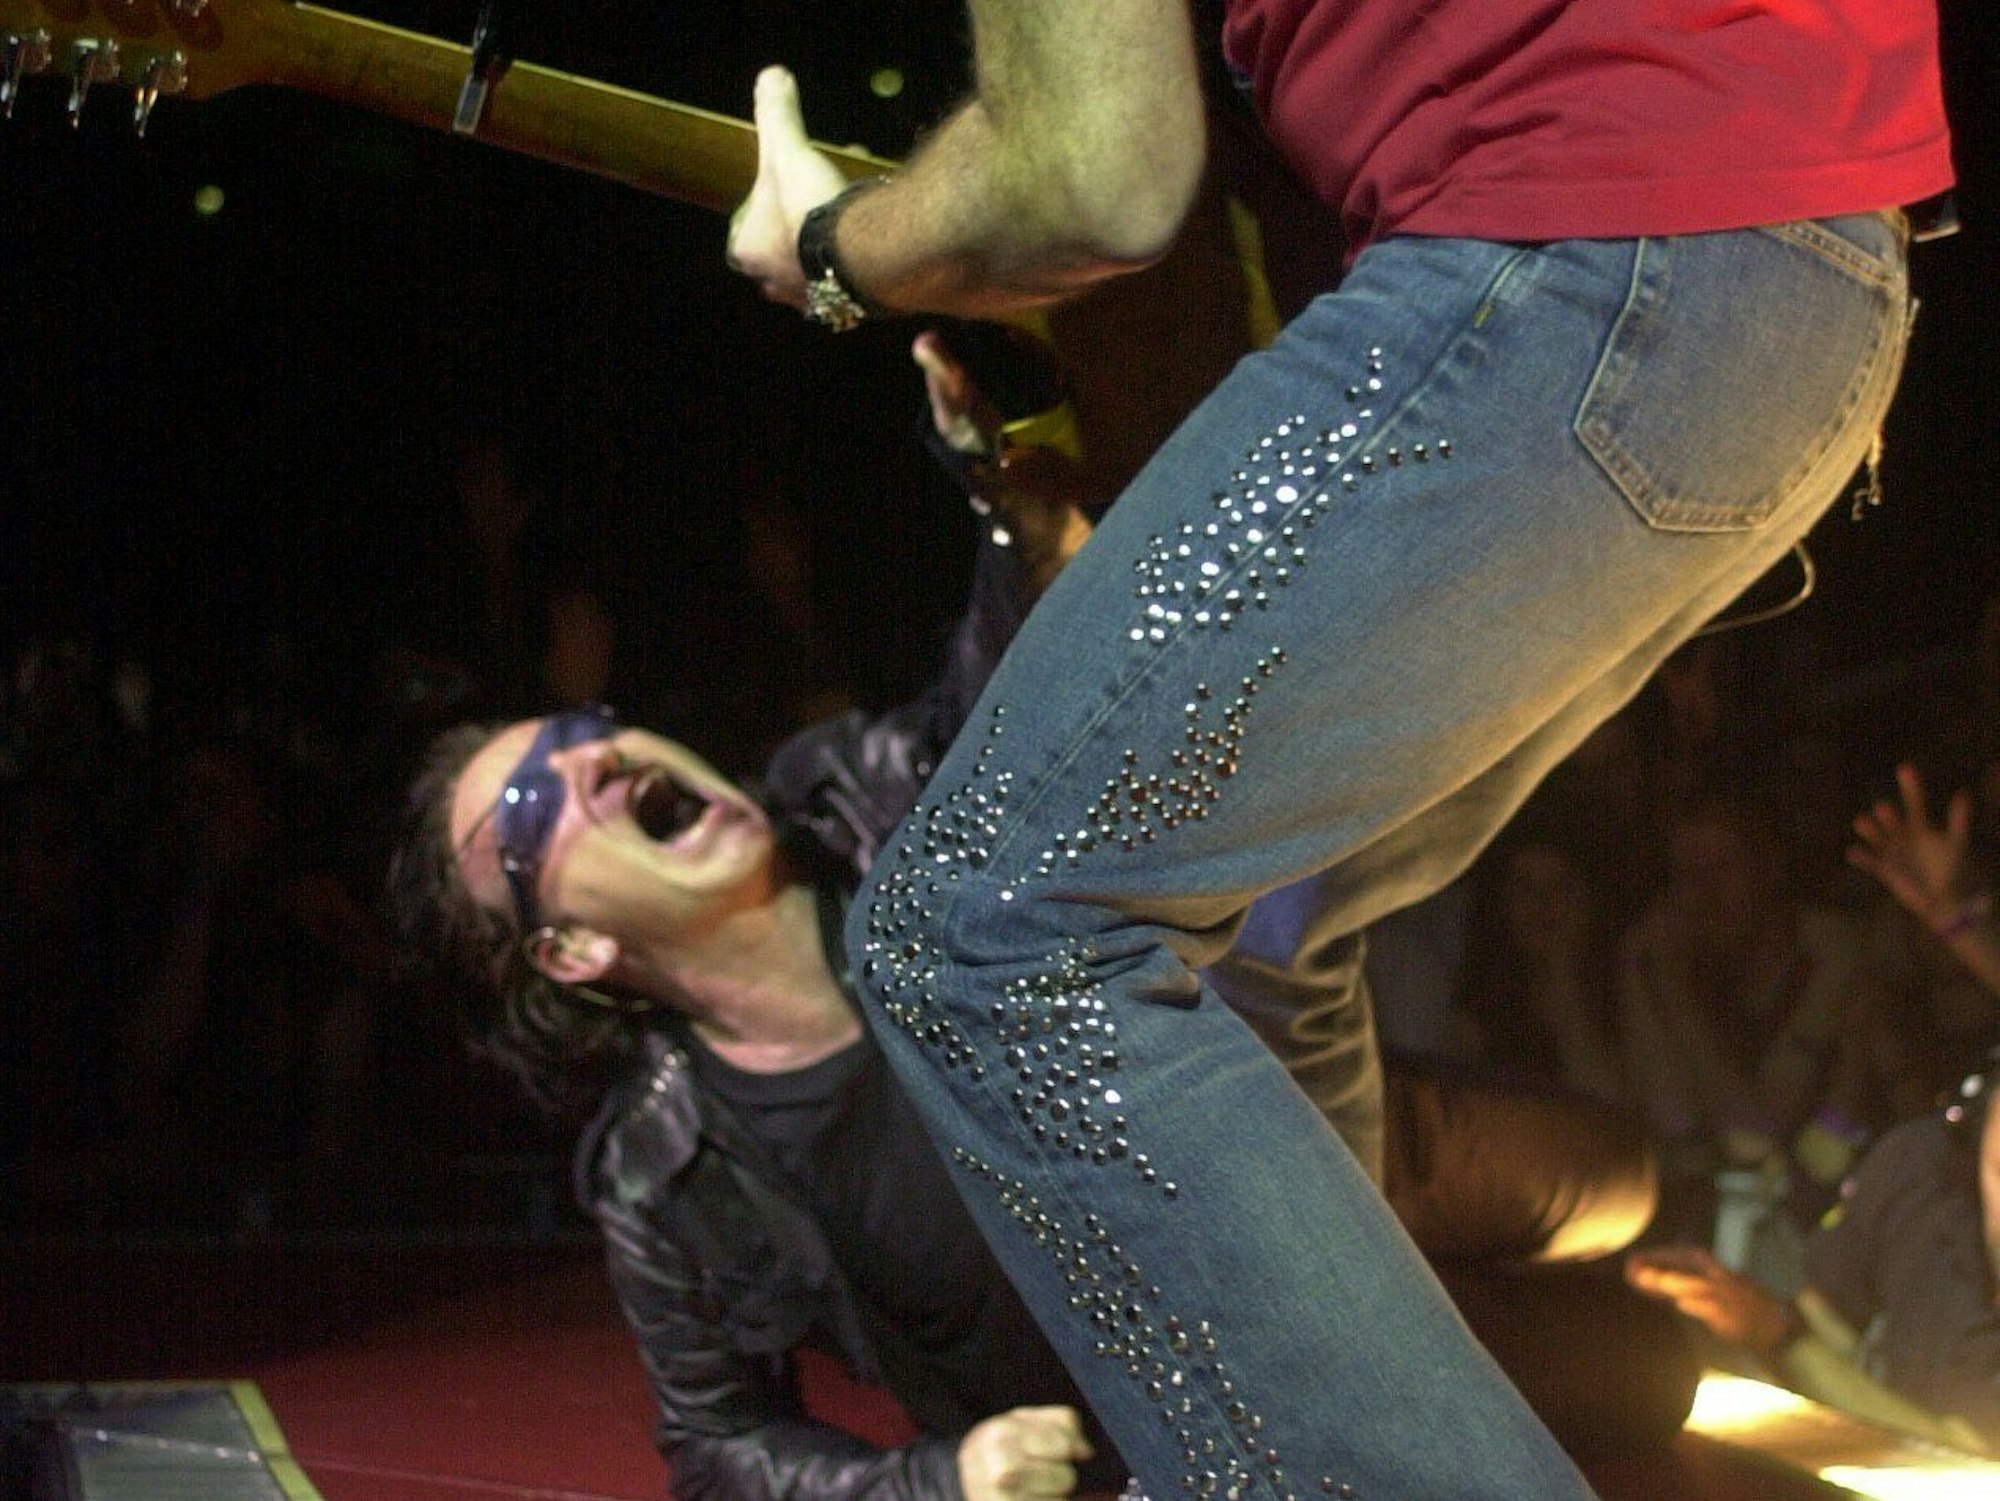 Der Sänger Bono performt auf dem Boden der Bühne in der Kölner Lanxess-Arena beim Auftritt seiner Band U2 im Juli 2001.